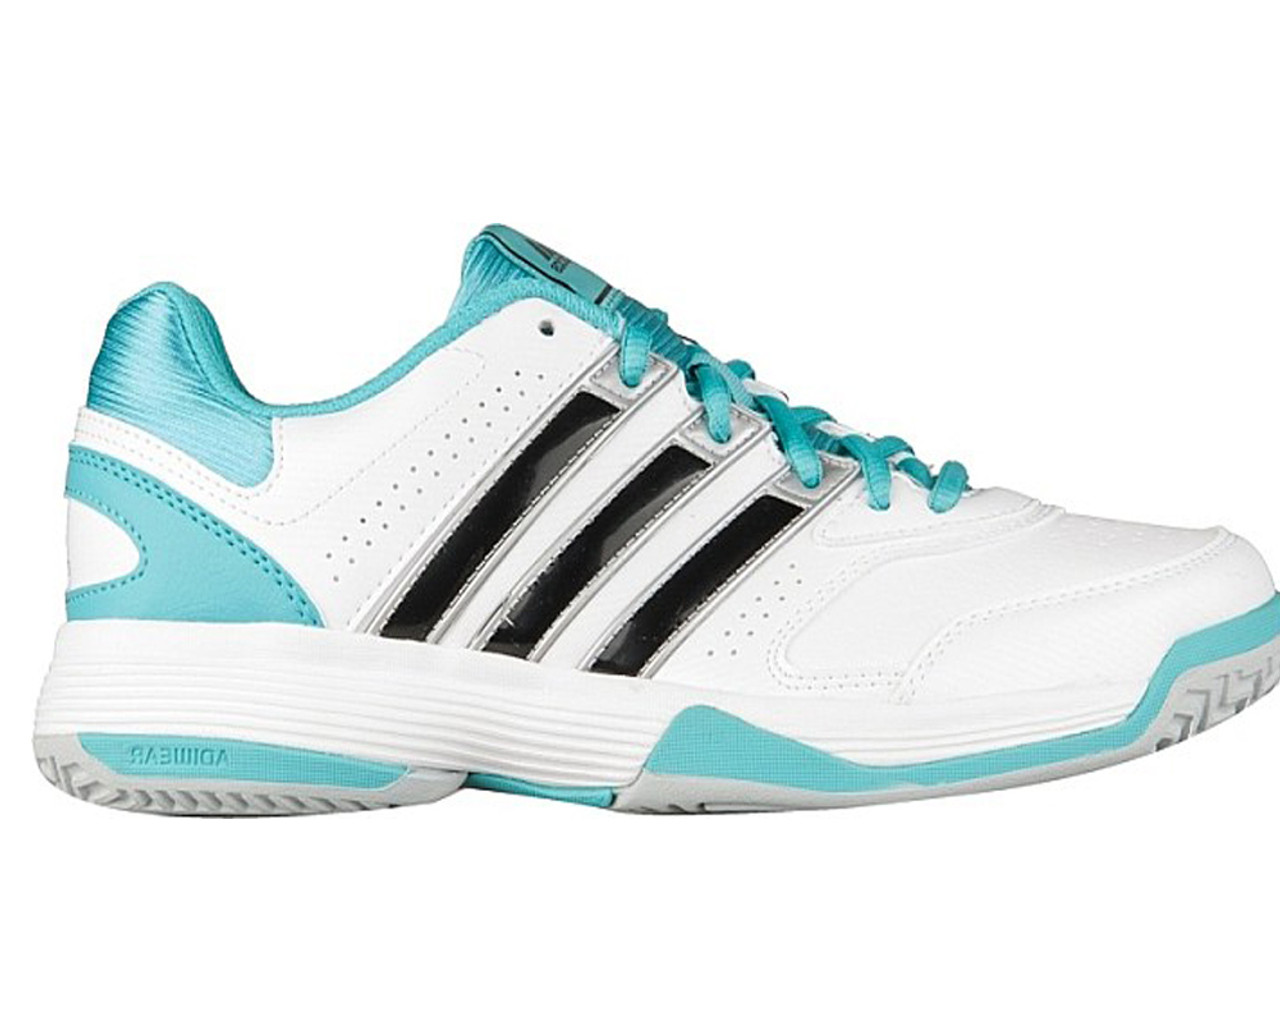 Adidas Women's Response Aspire Tennis Shoes - White | Discount Adidas  Ladies Athletic Shoe & More - Shoolu.com | Shoolu.com